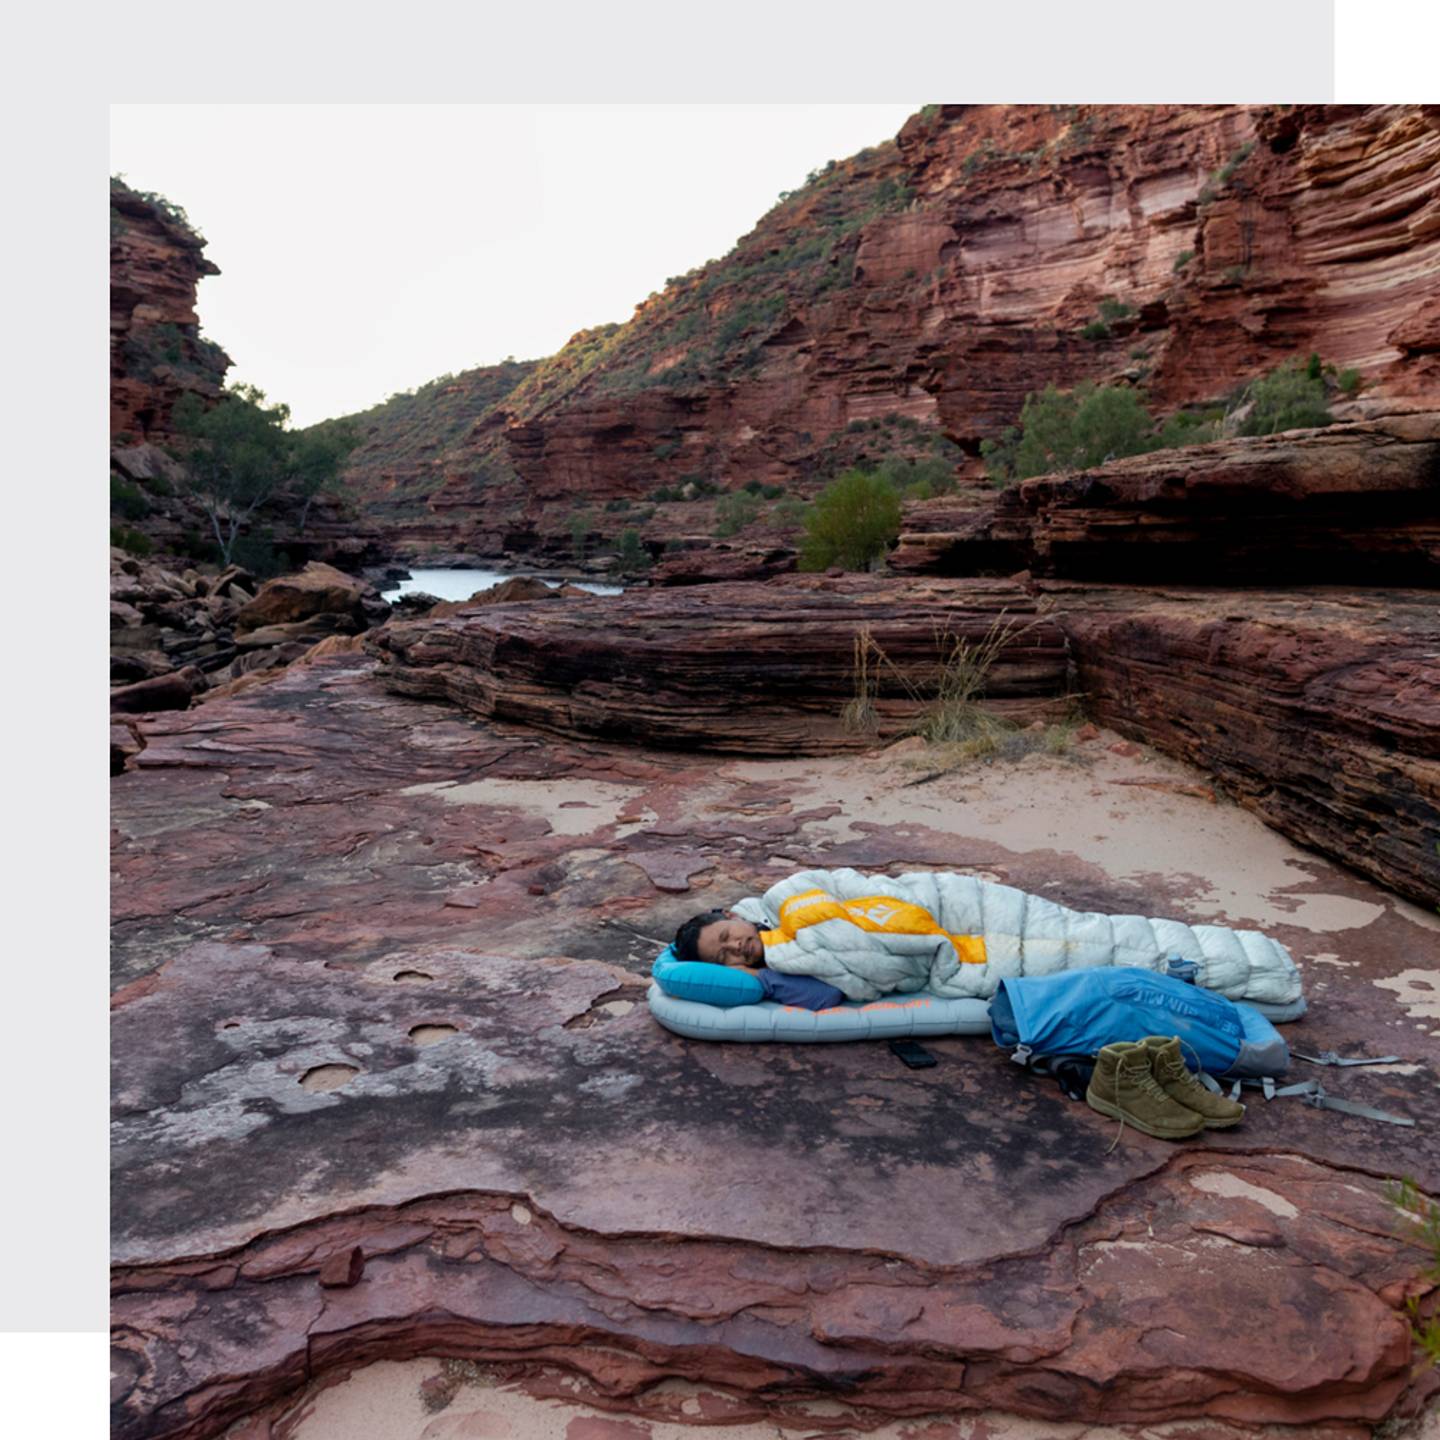 Un uomo che dorme nel suo sacco a pelo su un materassino adagiato su un terreno roccioso in un canyon australiano al termine di una giornata estenuante